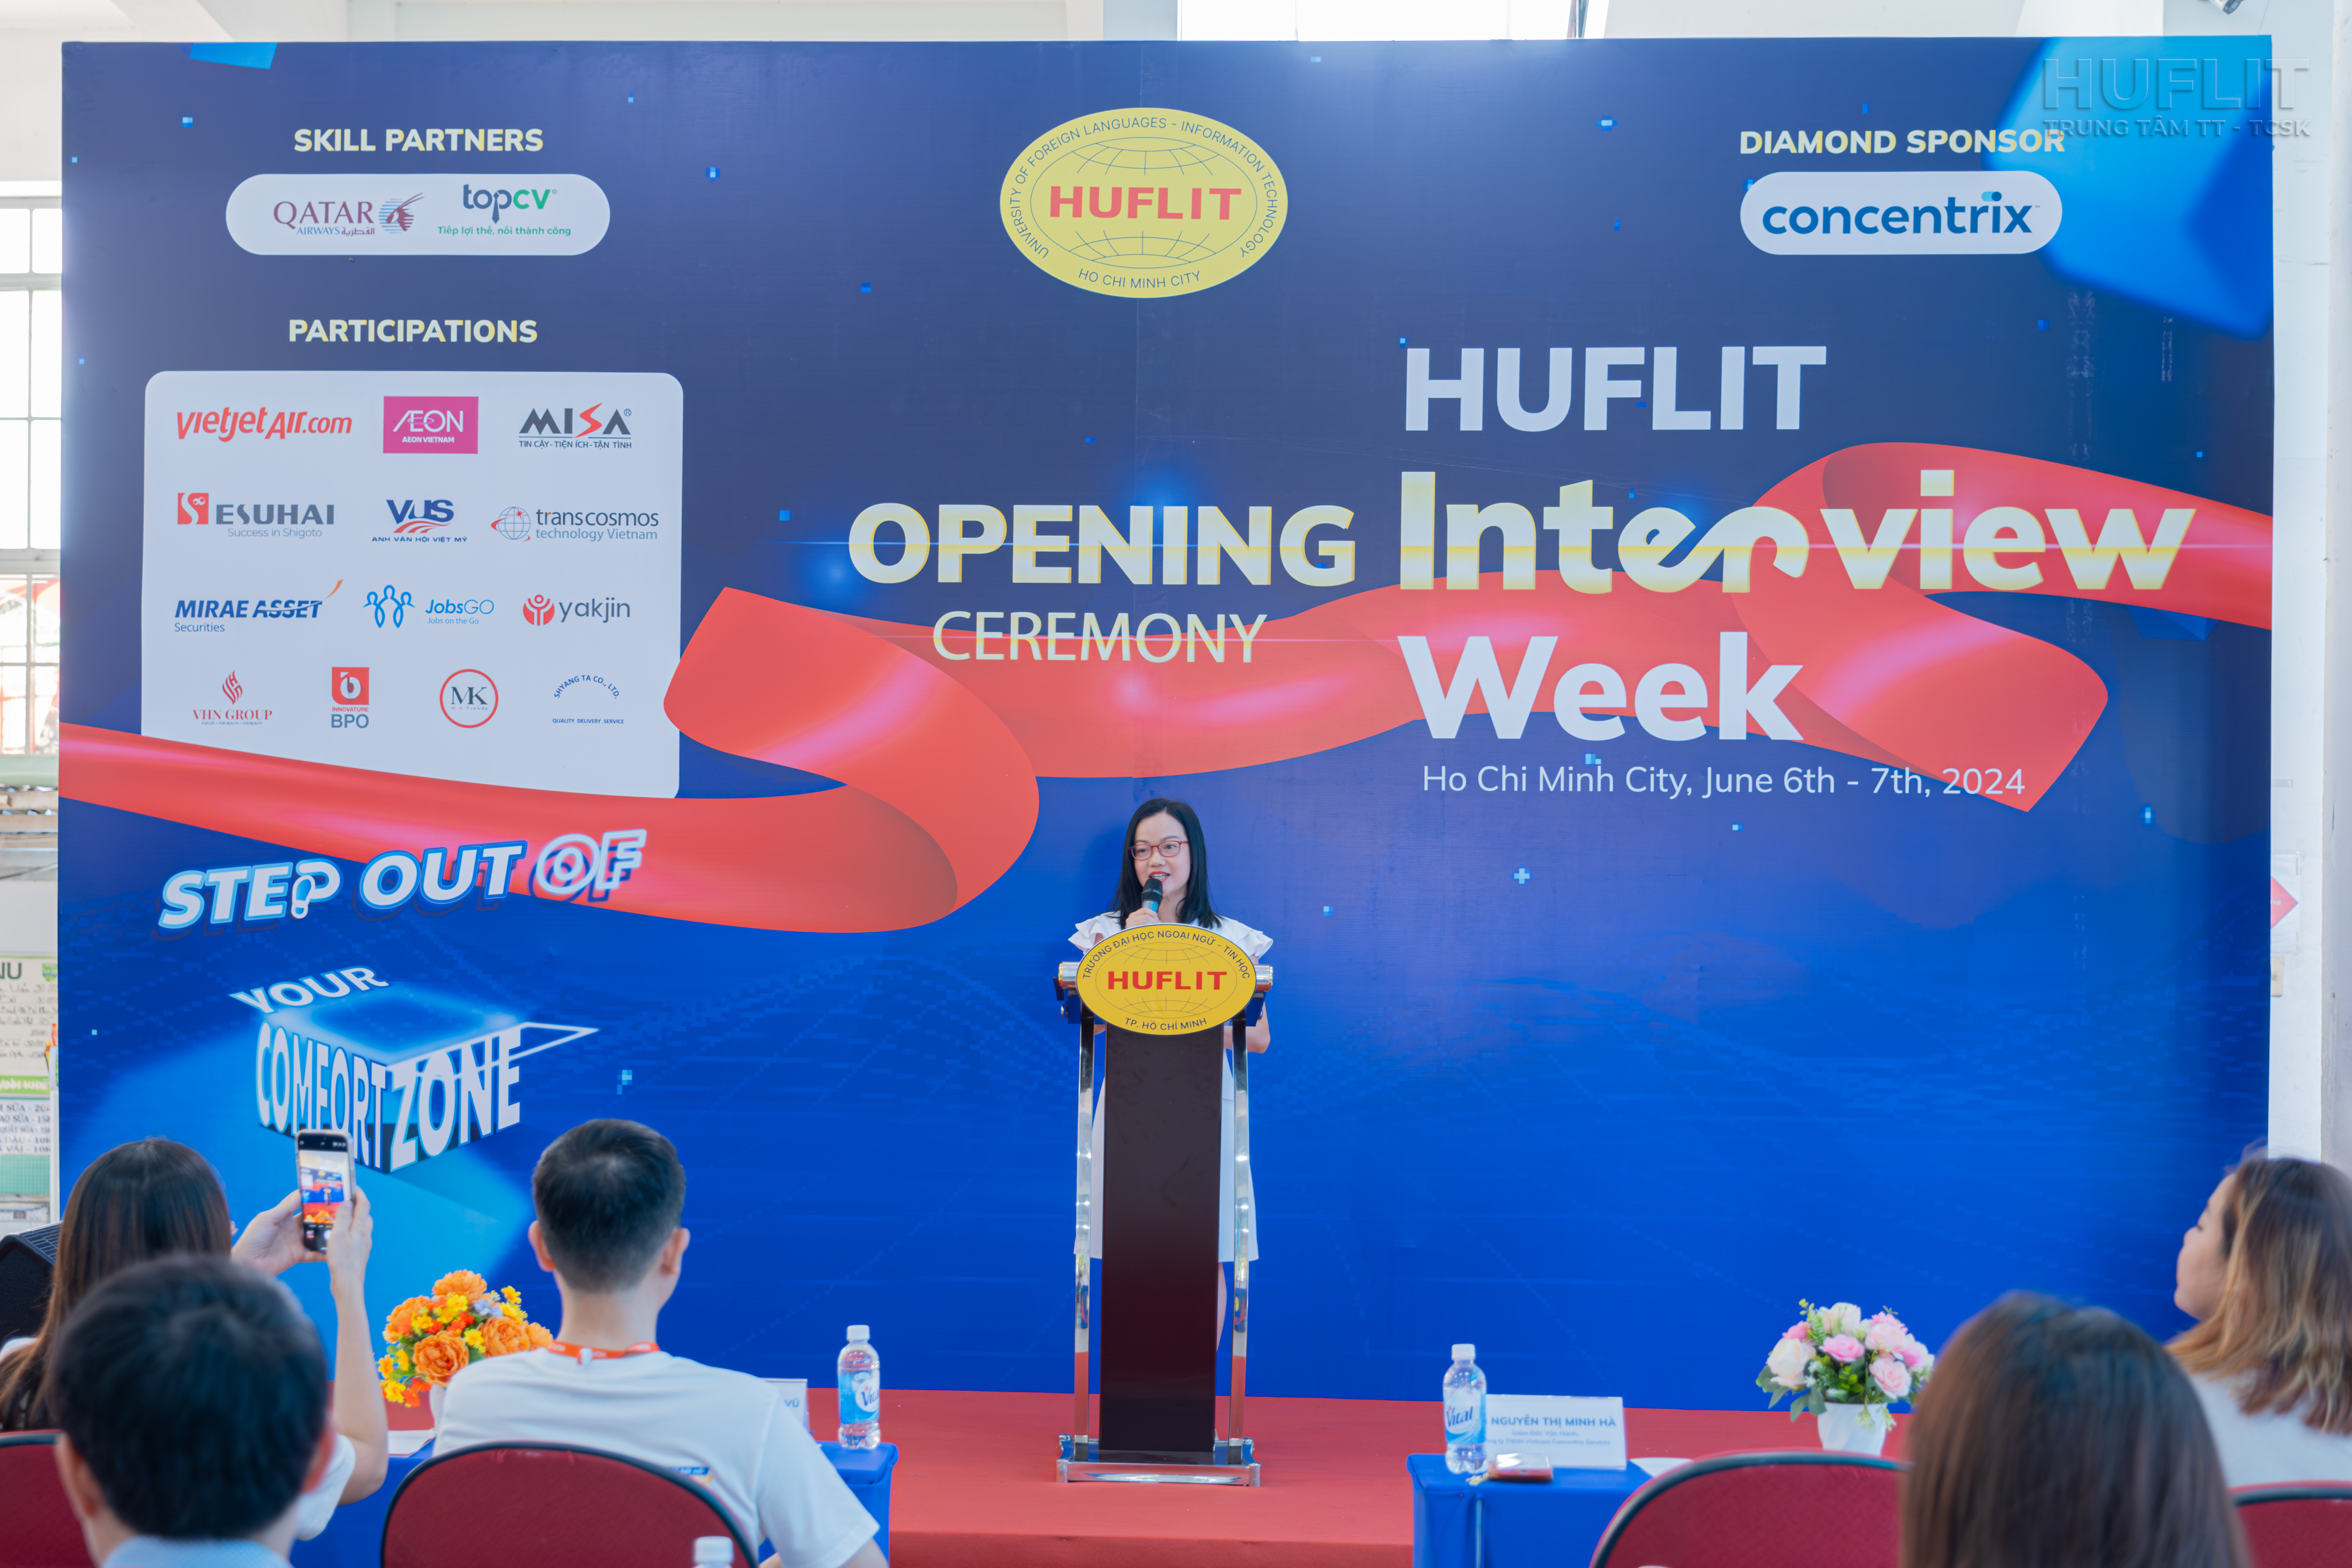 Bà Nguyễn Thị Minh Hà - Giám đốc vận hành Công ty TNHH Vietnam Concentrix; Cựu sinh viên HUFLIT đồng thời là Nhà tài trợ Kim Cương phát biểu tại sự kiện.